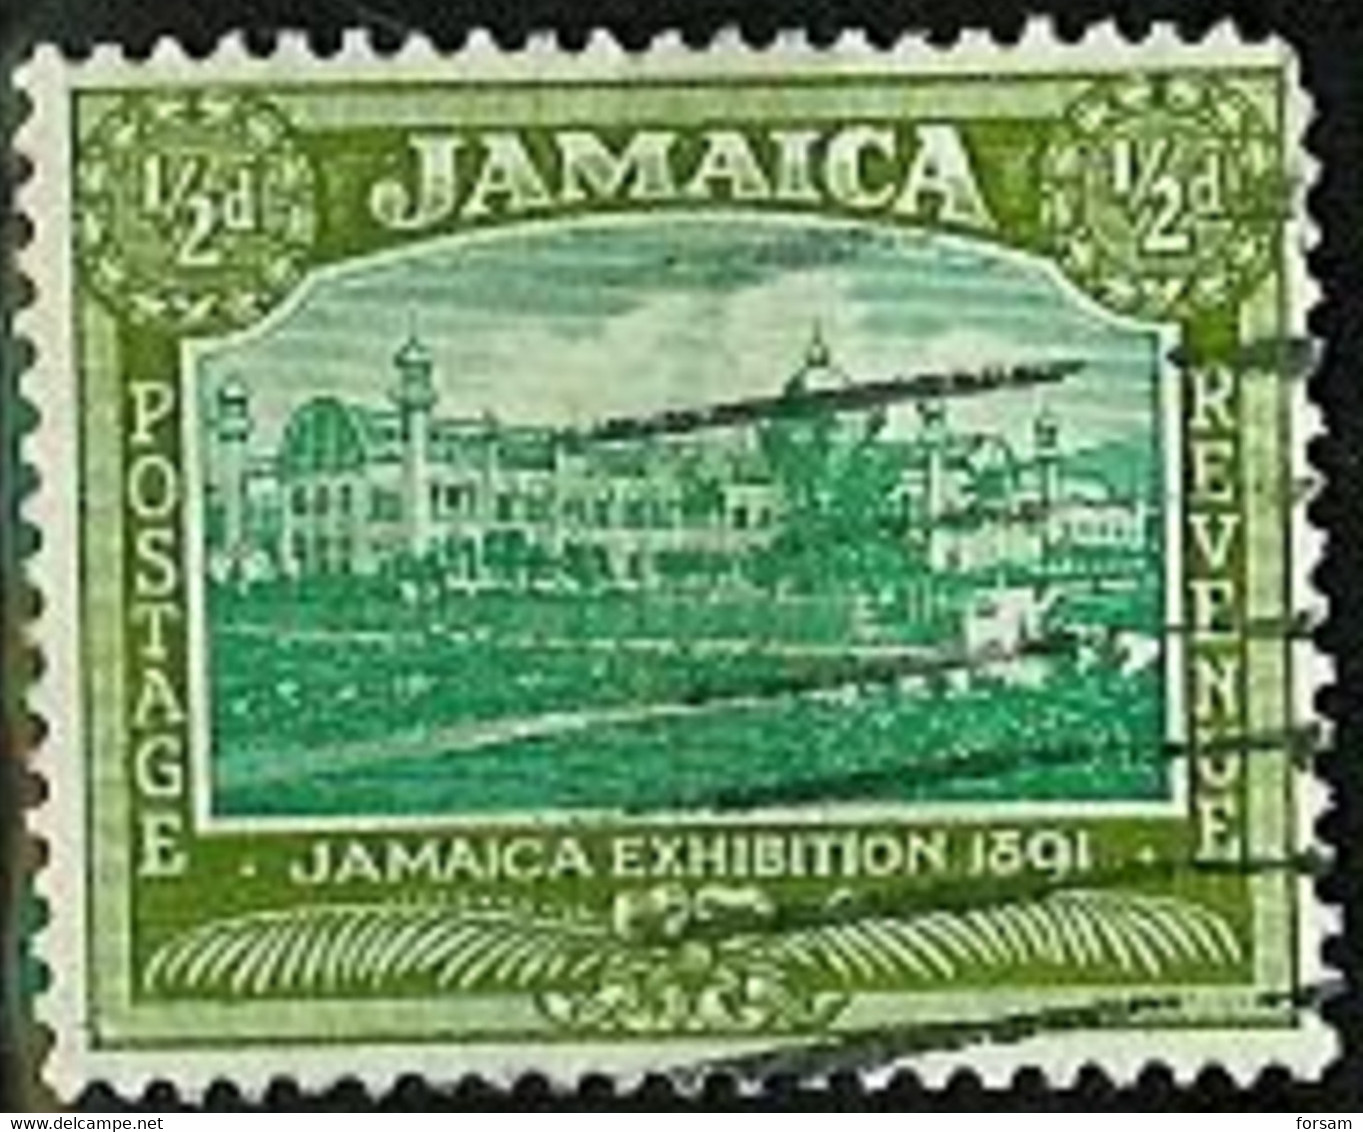 JAMAICA..1920/21..Michel # 77...used. - Giamaica (...-1961)